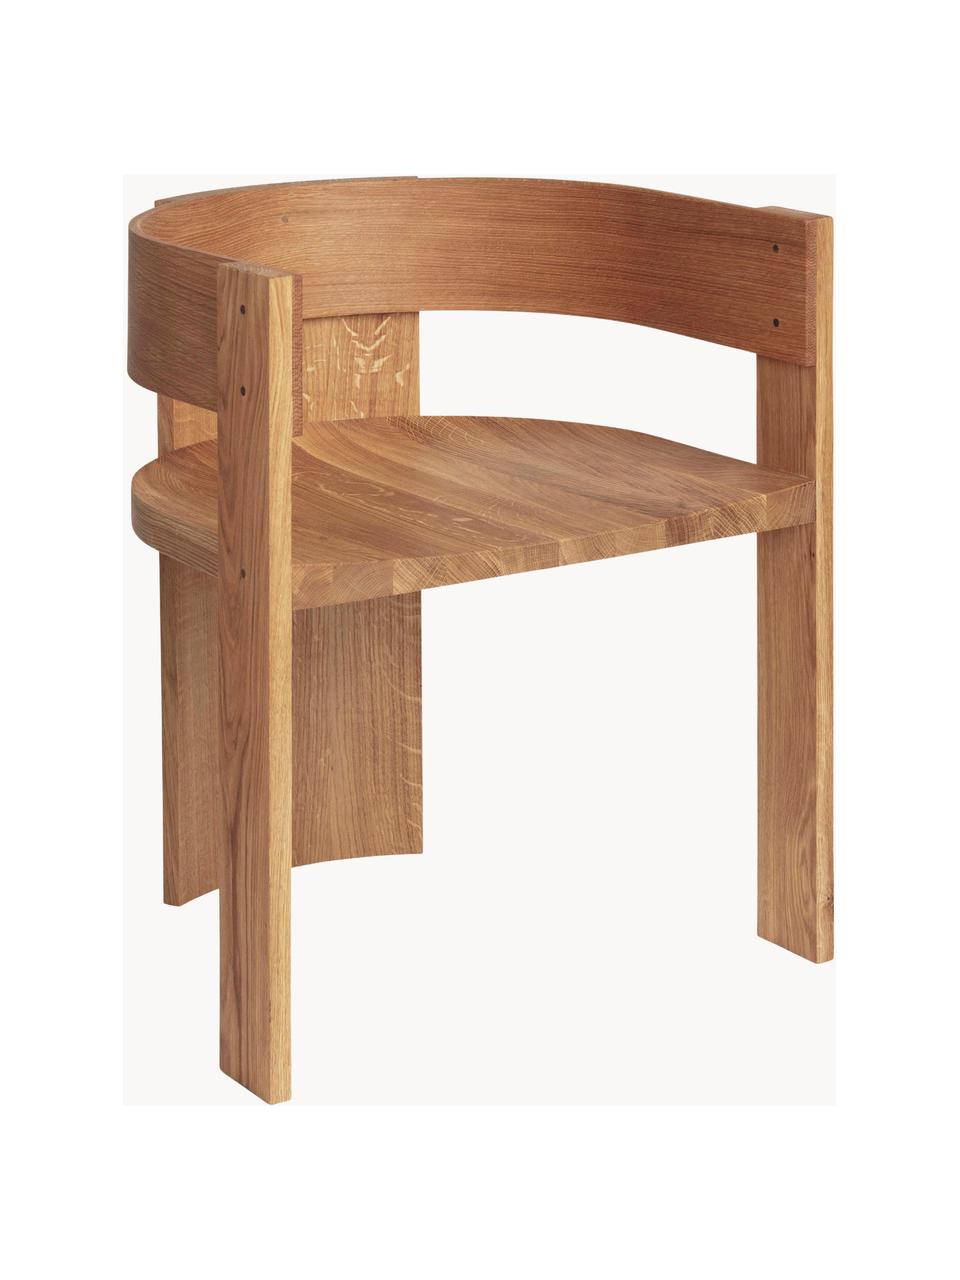 Dřevěná židle s područkami Collector, Dubové a ořechové dřevo, olejované, Dubové dřevo, ořechové dřevo, Š 51 cm, H 51 cm